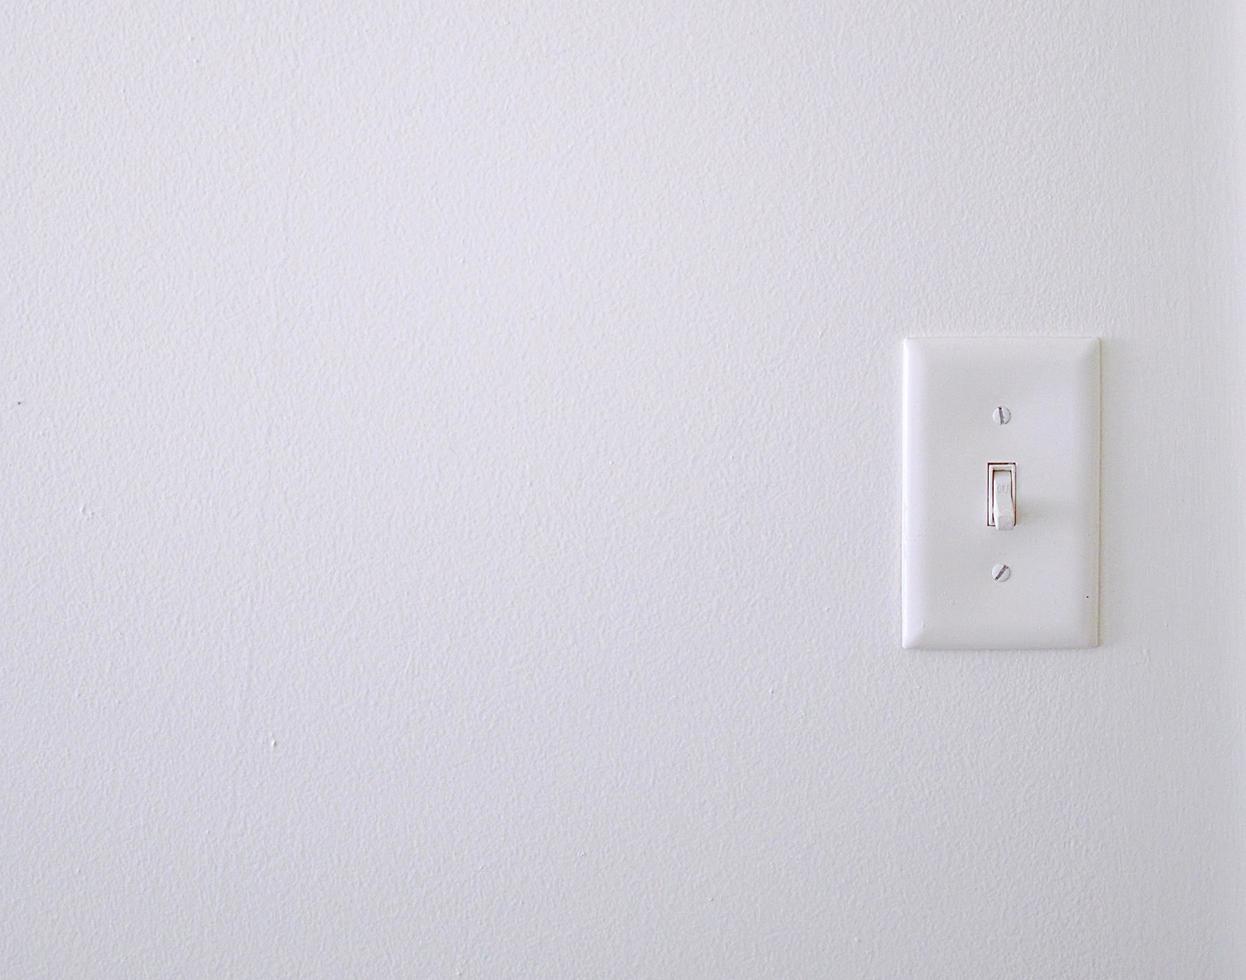 pared blanca con un interruptor de luz 1307568 Foto de stock en Vecteezy